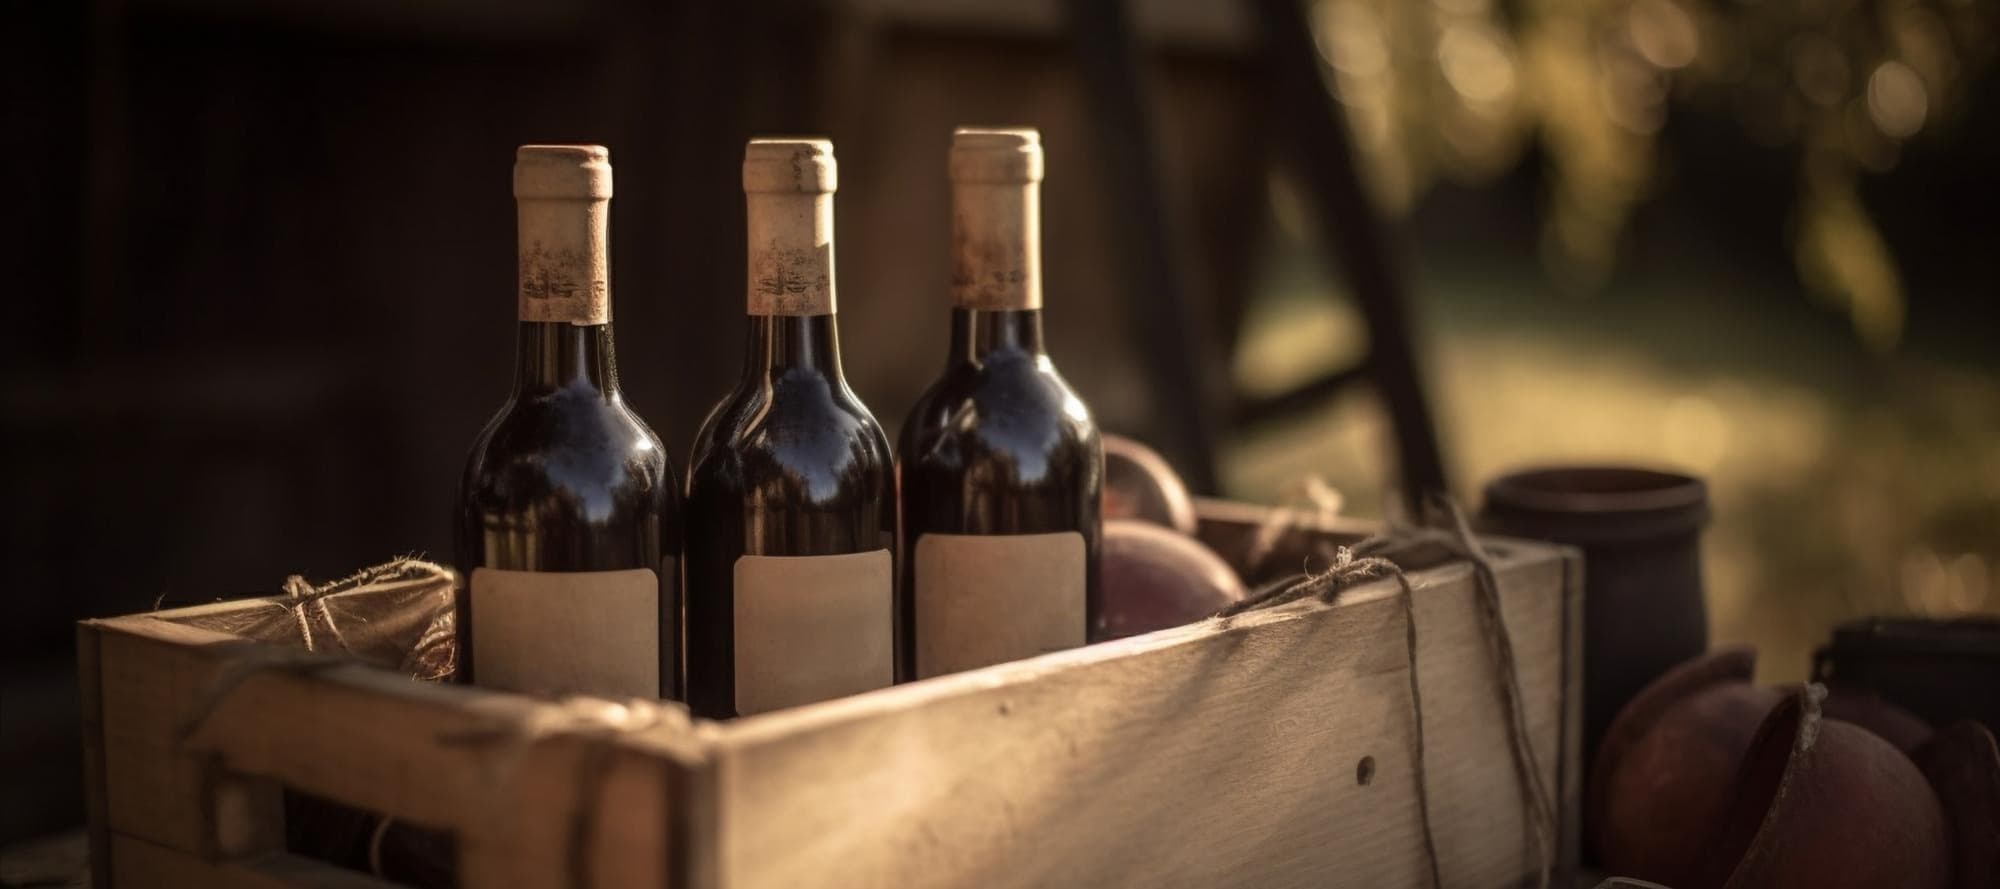 Фото новости: "Эксперимент по онлайн-торговле вином в России так и не запустился"